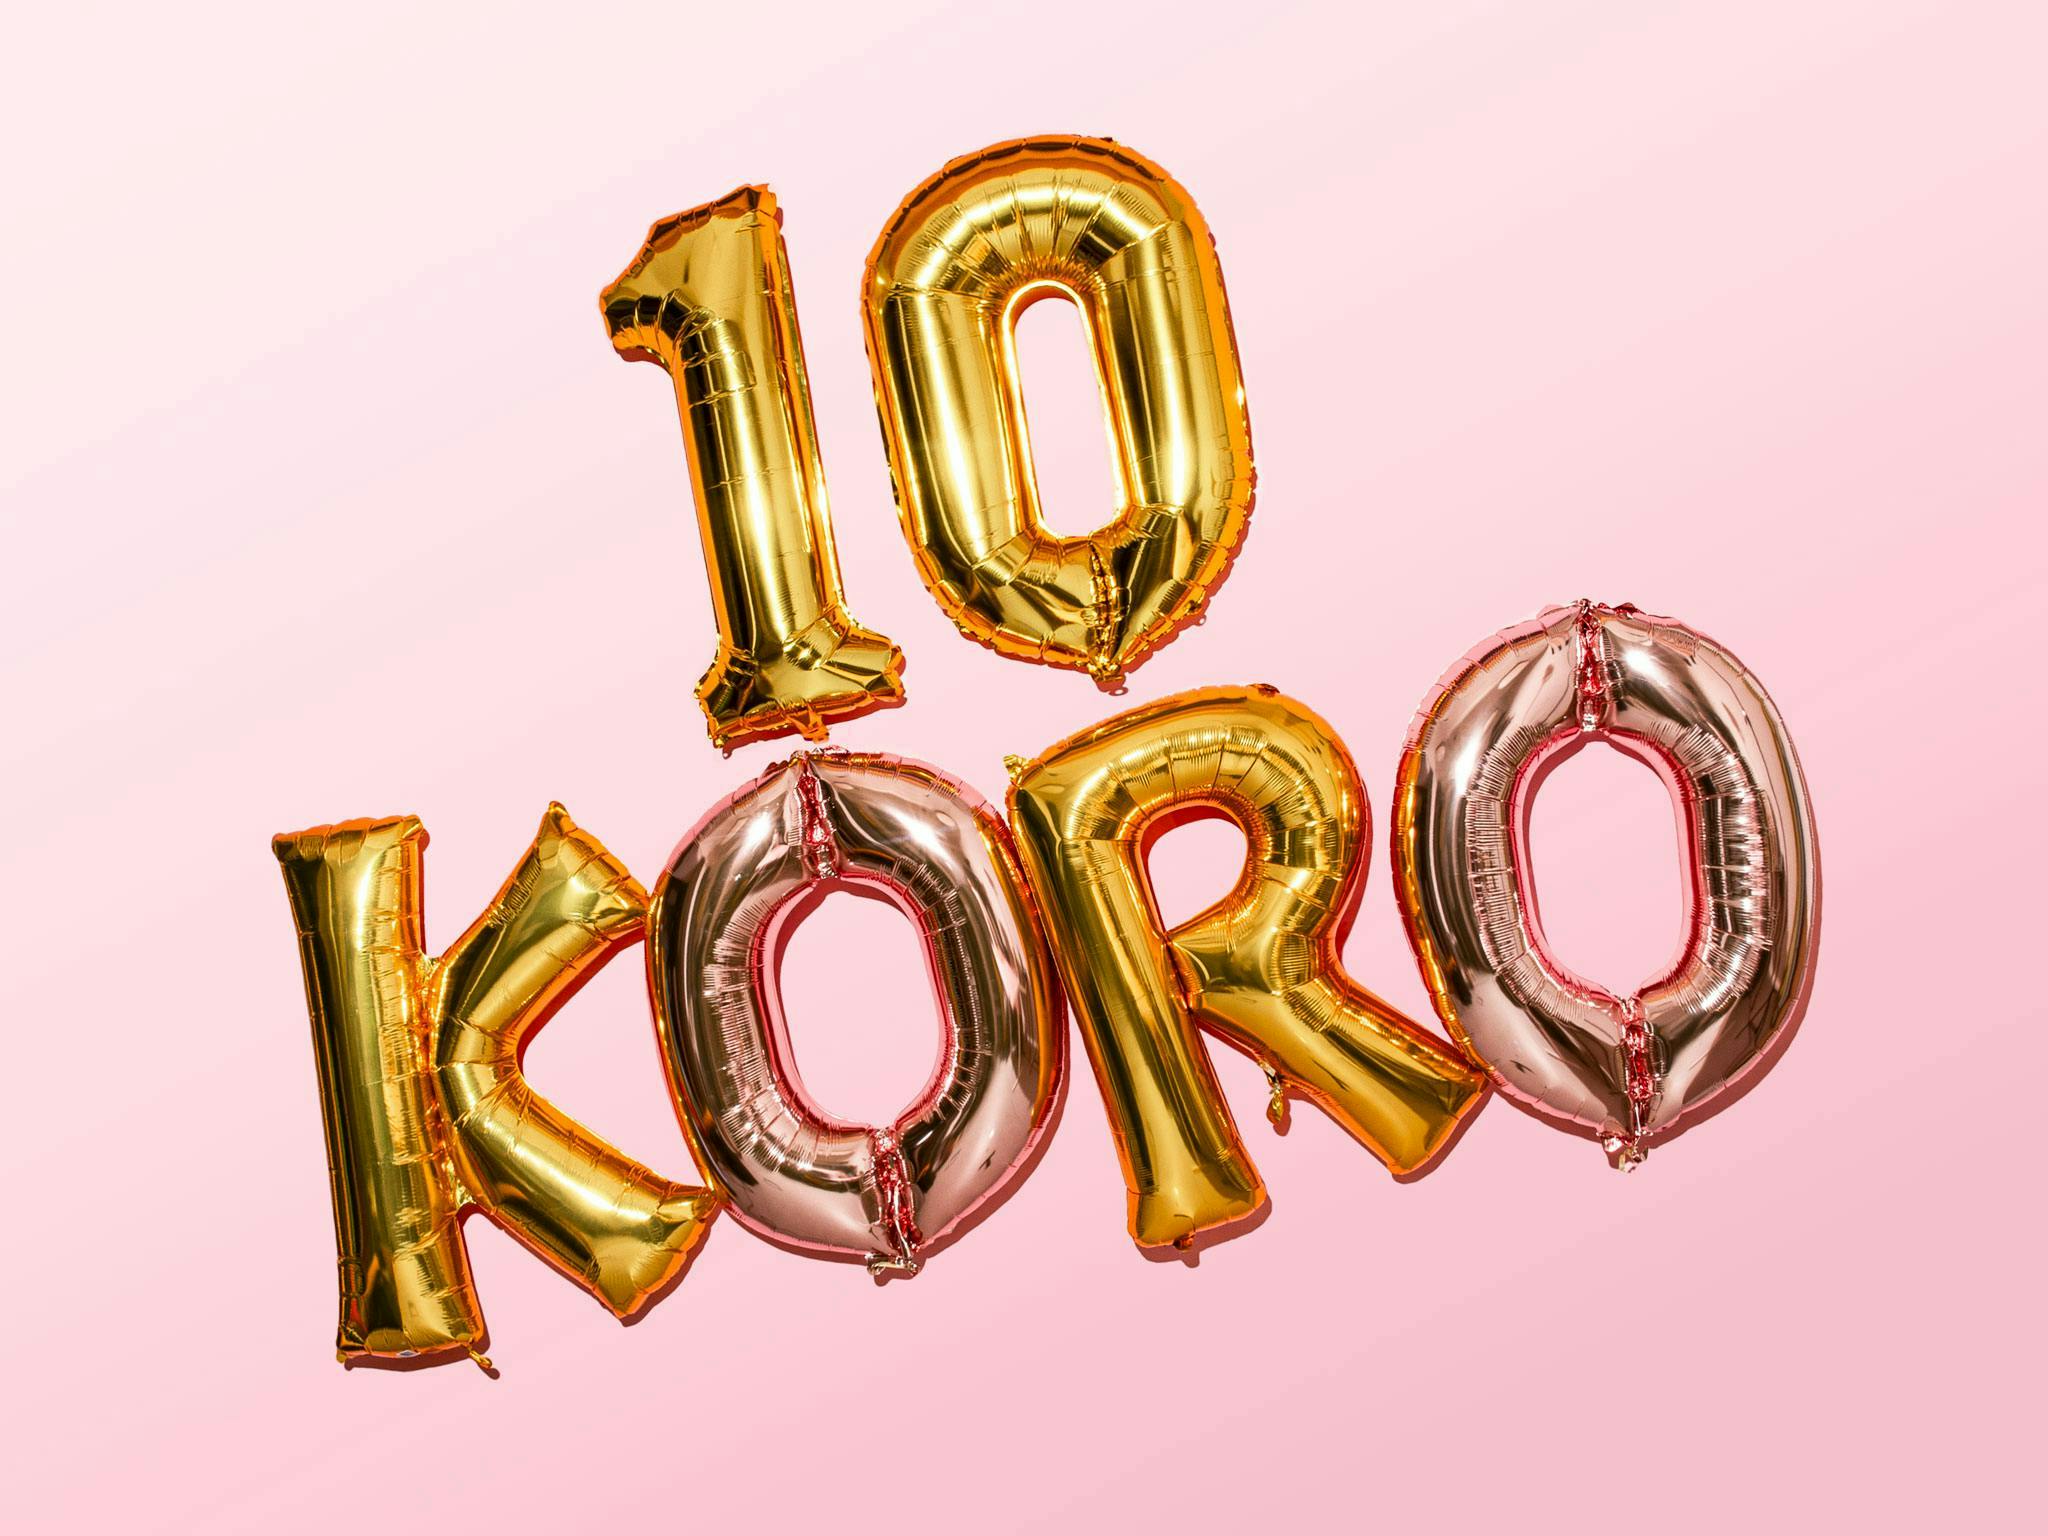 Temos algo para celebrar: 10 anos de KoRo